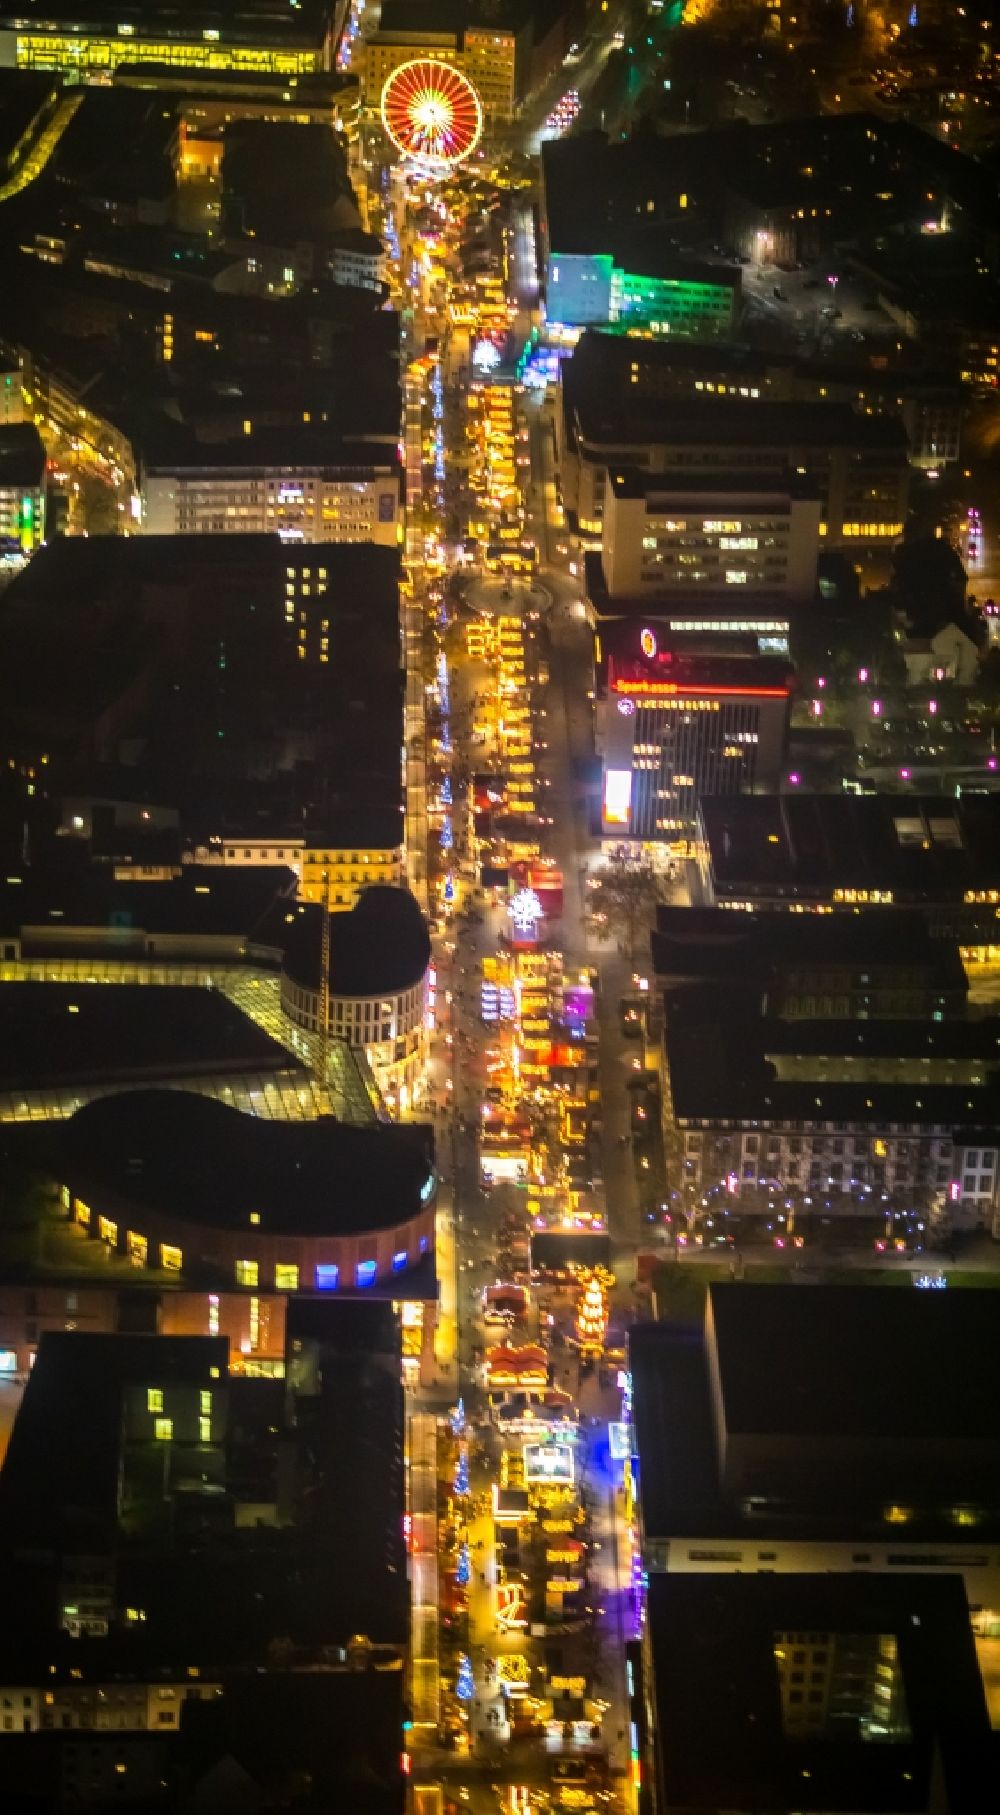 Duisburg bei Nacht von oben - Nachtluftbild Weihnachtsmarkt- Veranstaltungsgelände und Verkaufs- Hütten und Buden auf der Königsstraße in Duisburg im Bundesland Nordrhein-Westfalen